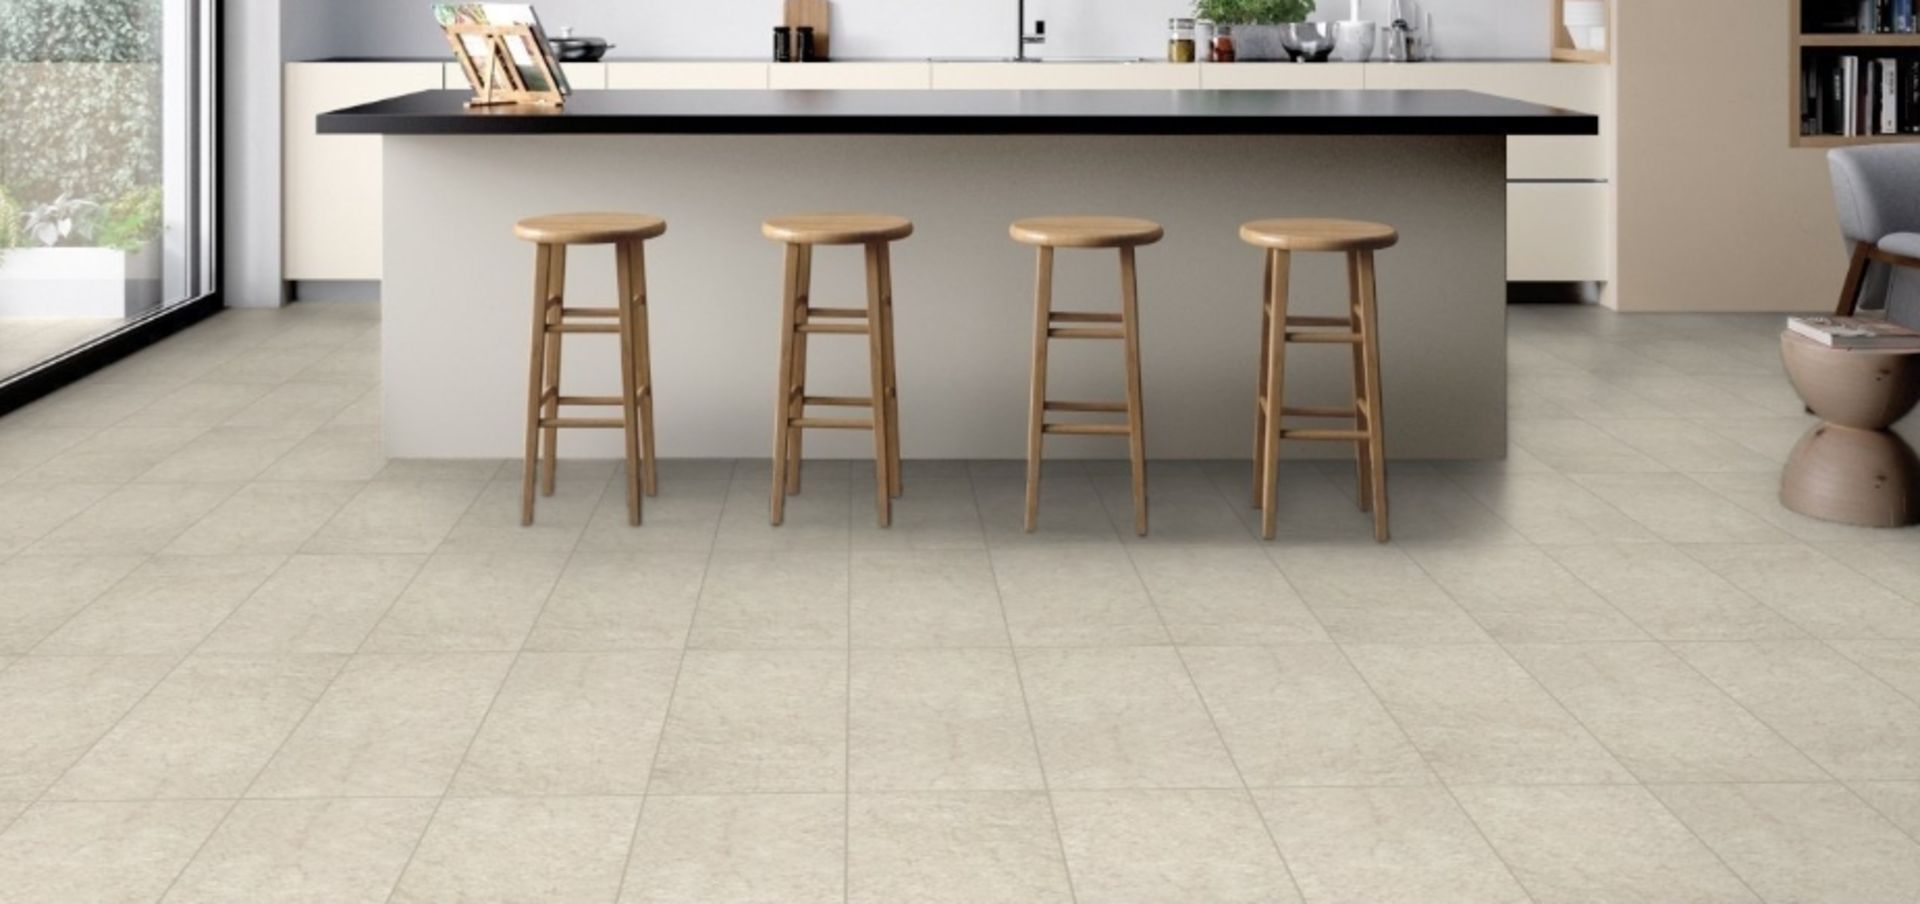 12 x Boxes of RAK Porcelain Tiles - Design Concrete Range - Sand Colour Matt Finish - Size: 120x60cm - Image 4 of 12